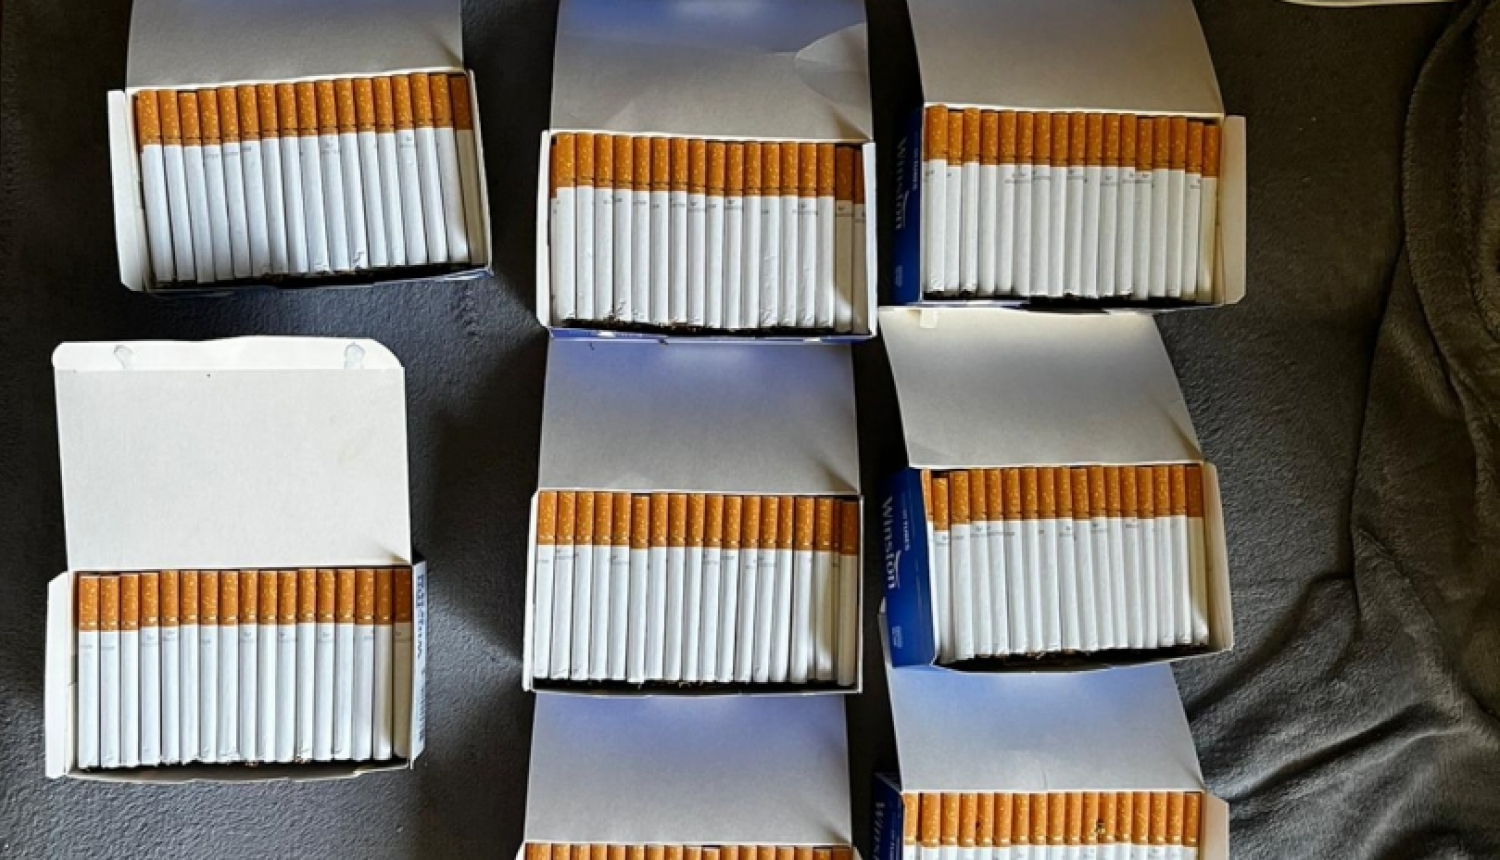 Rēzeknē un Viļānos likumsargi konfiscē ievērojamu daudzumu smēķējamās tabakas un cigarešu izgatavošanas iekārtas